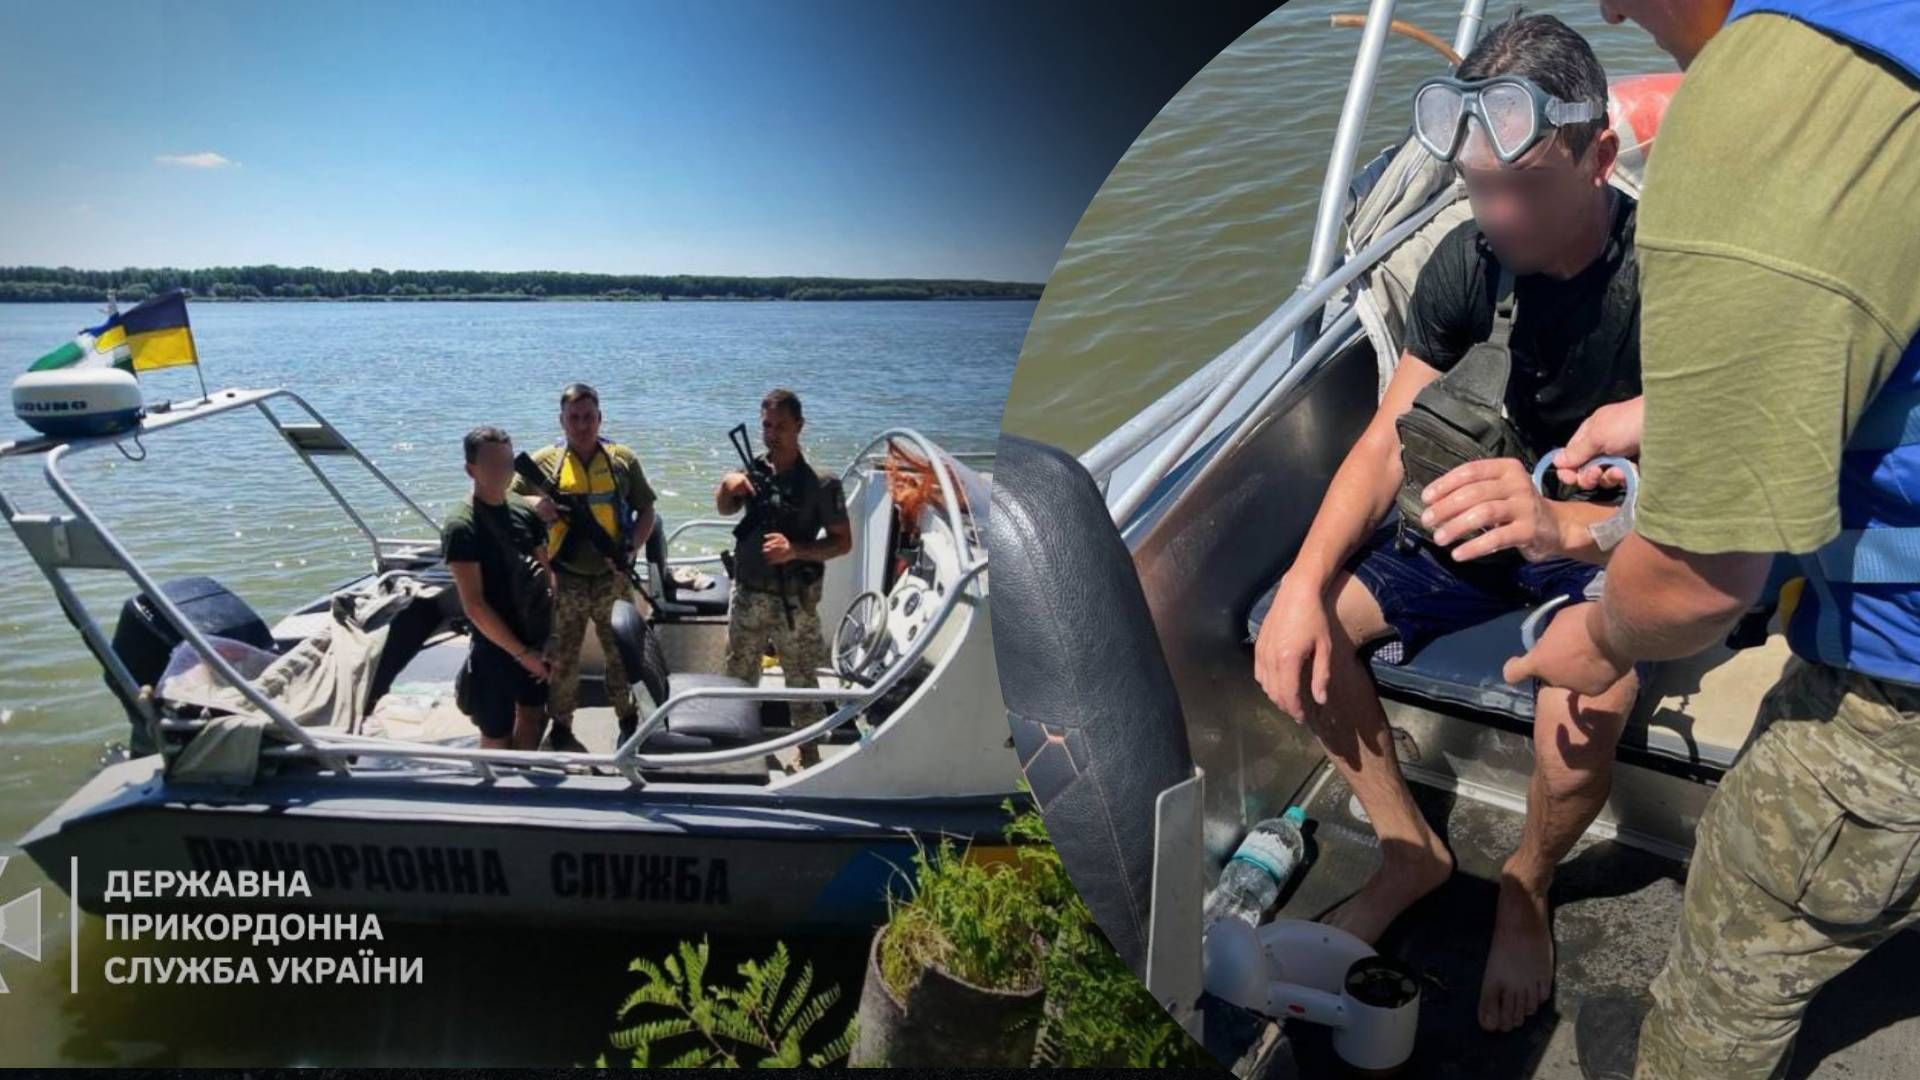 3 В стиле Бонда Пограничники обнаружили в Дунае мужчину, который водным скутером пытался достать - 24 Канал